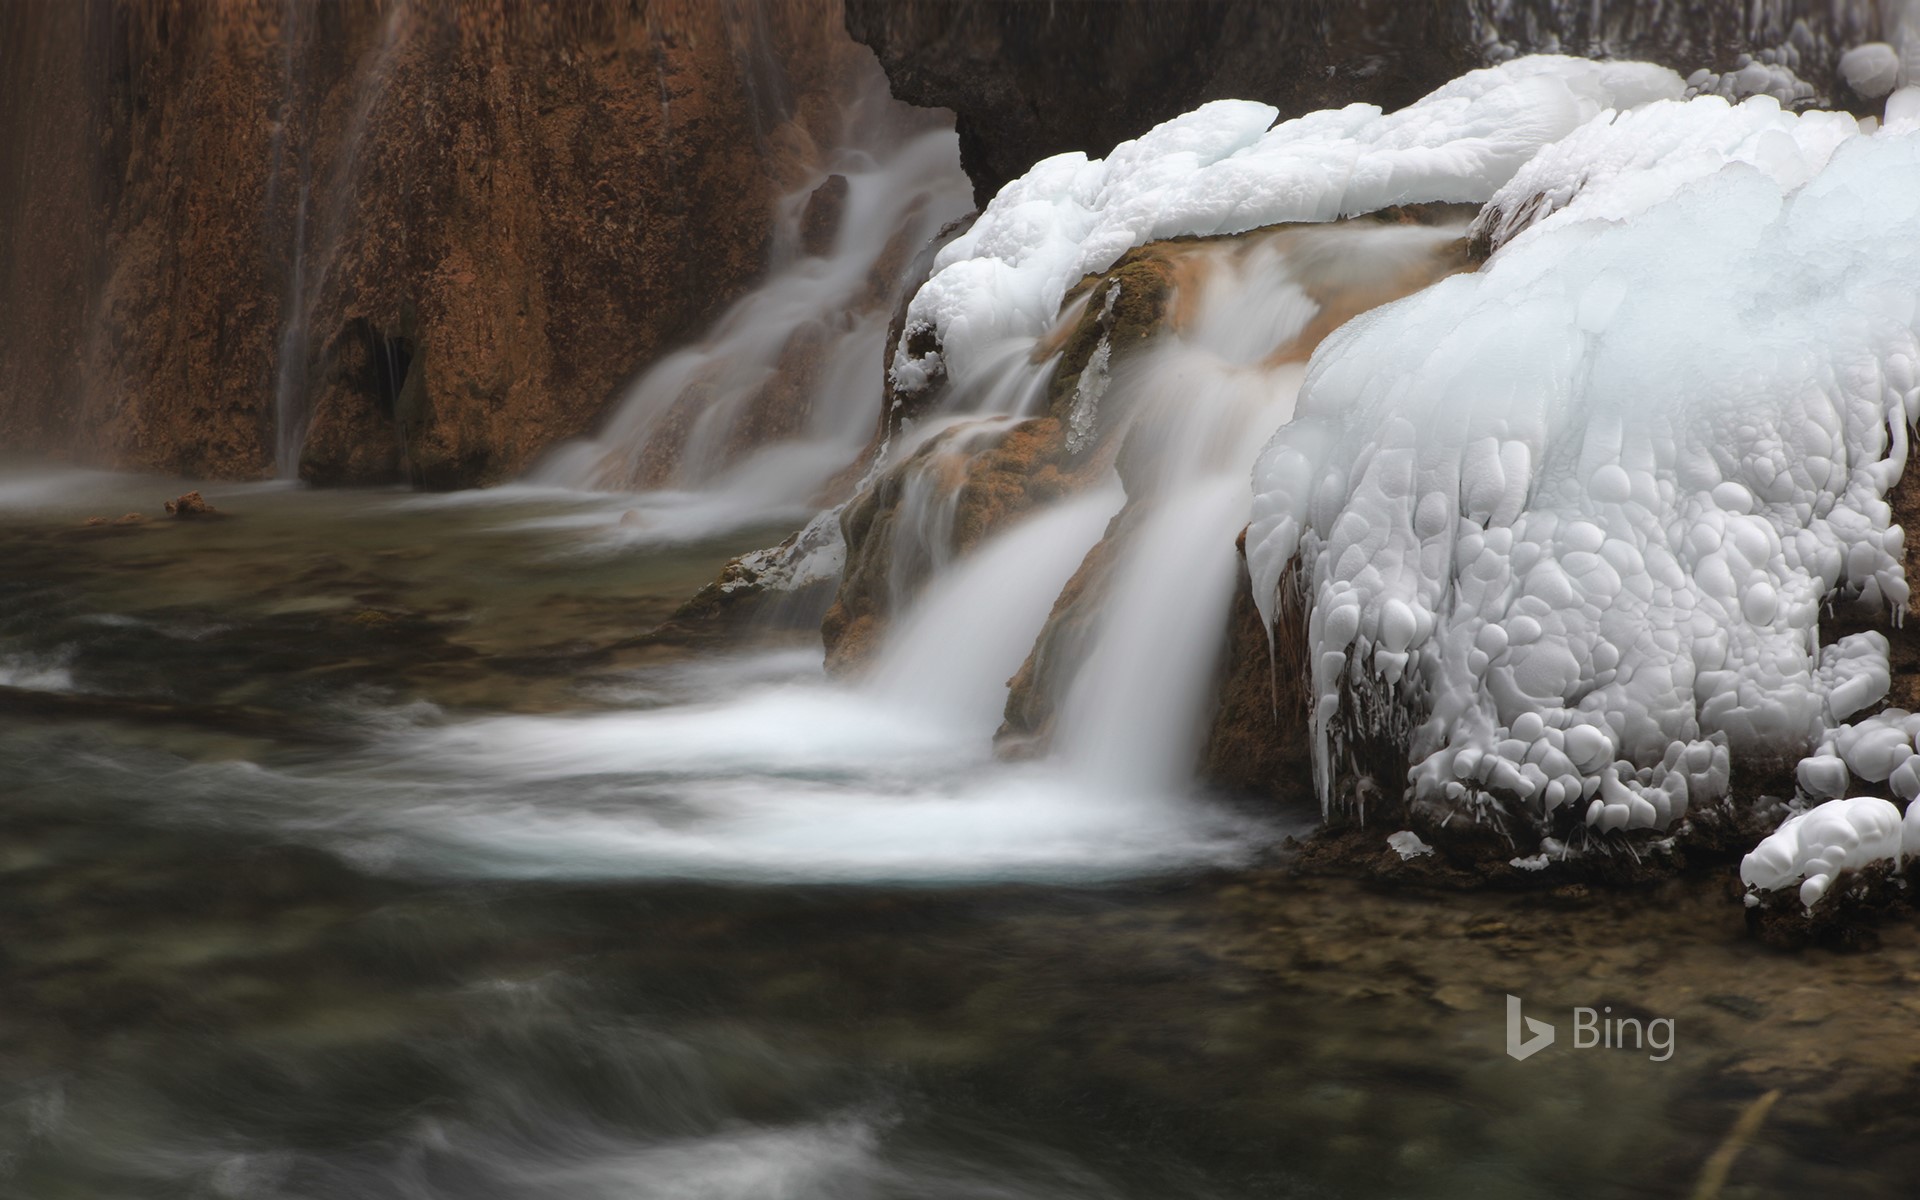 [Today's Lidong] A frozen "freeze" stream, Jiuzhaigou County, Sichuan Province